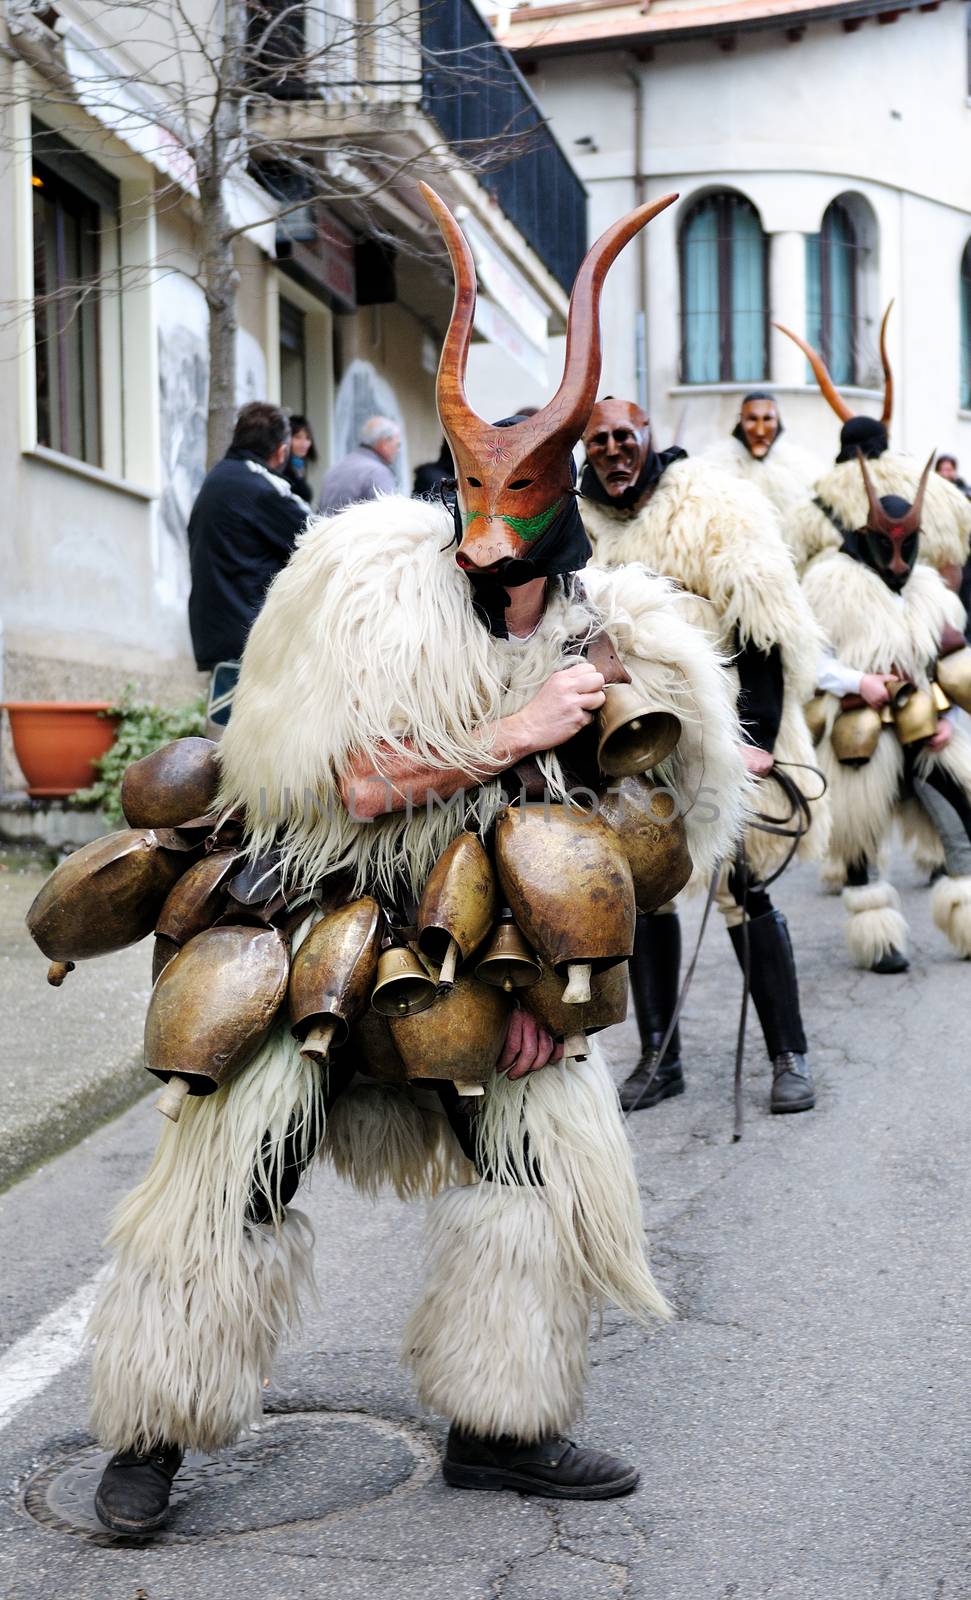 Traditional masks of Sardinia. by francescomoufotografo